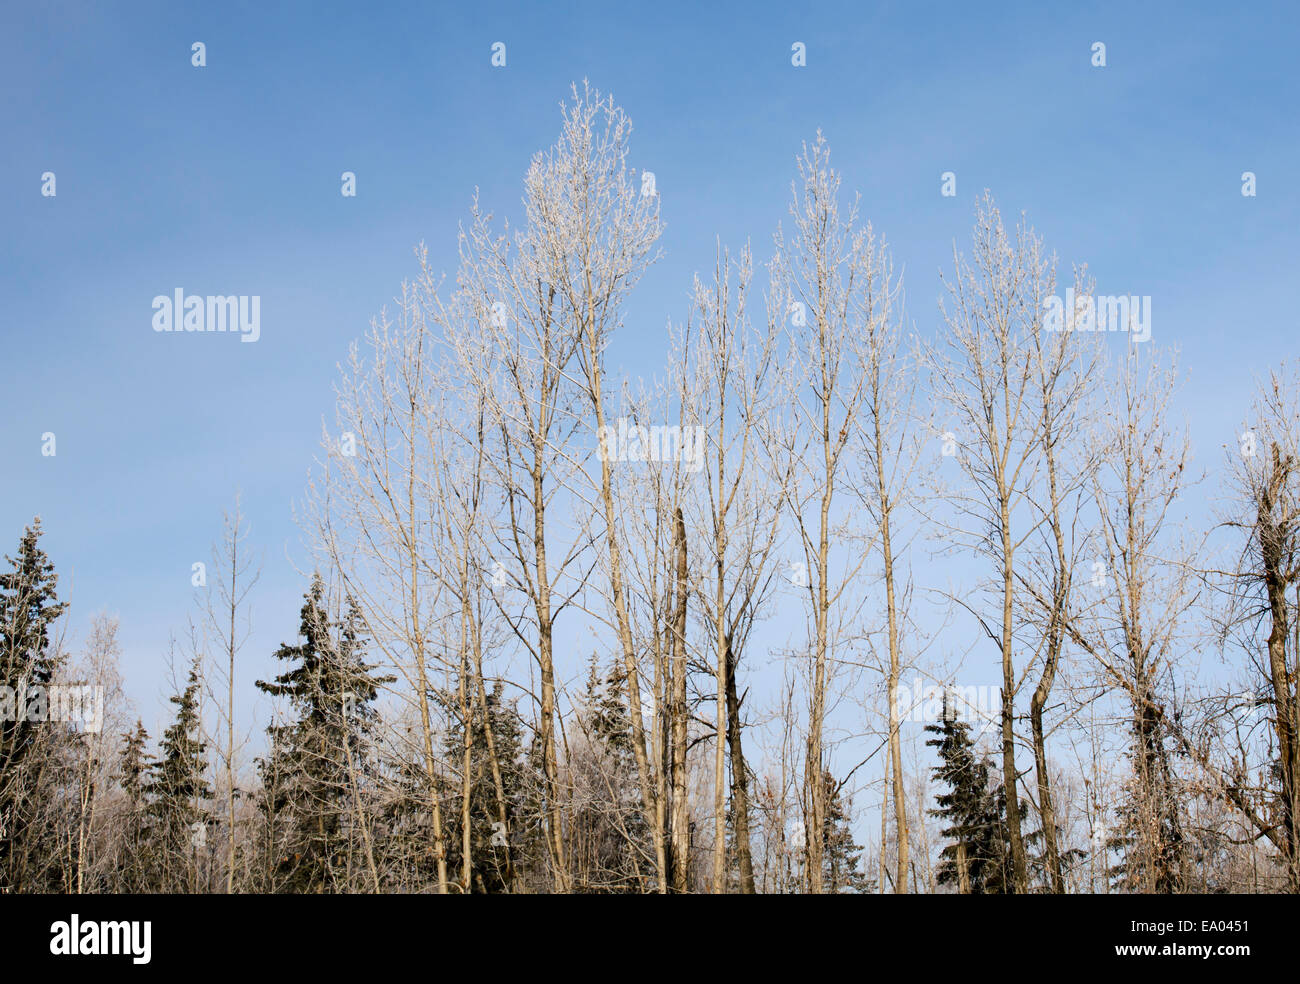 Winter tree scene in Alaska Stock Photo